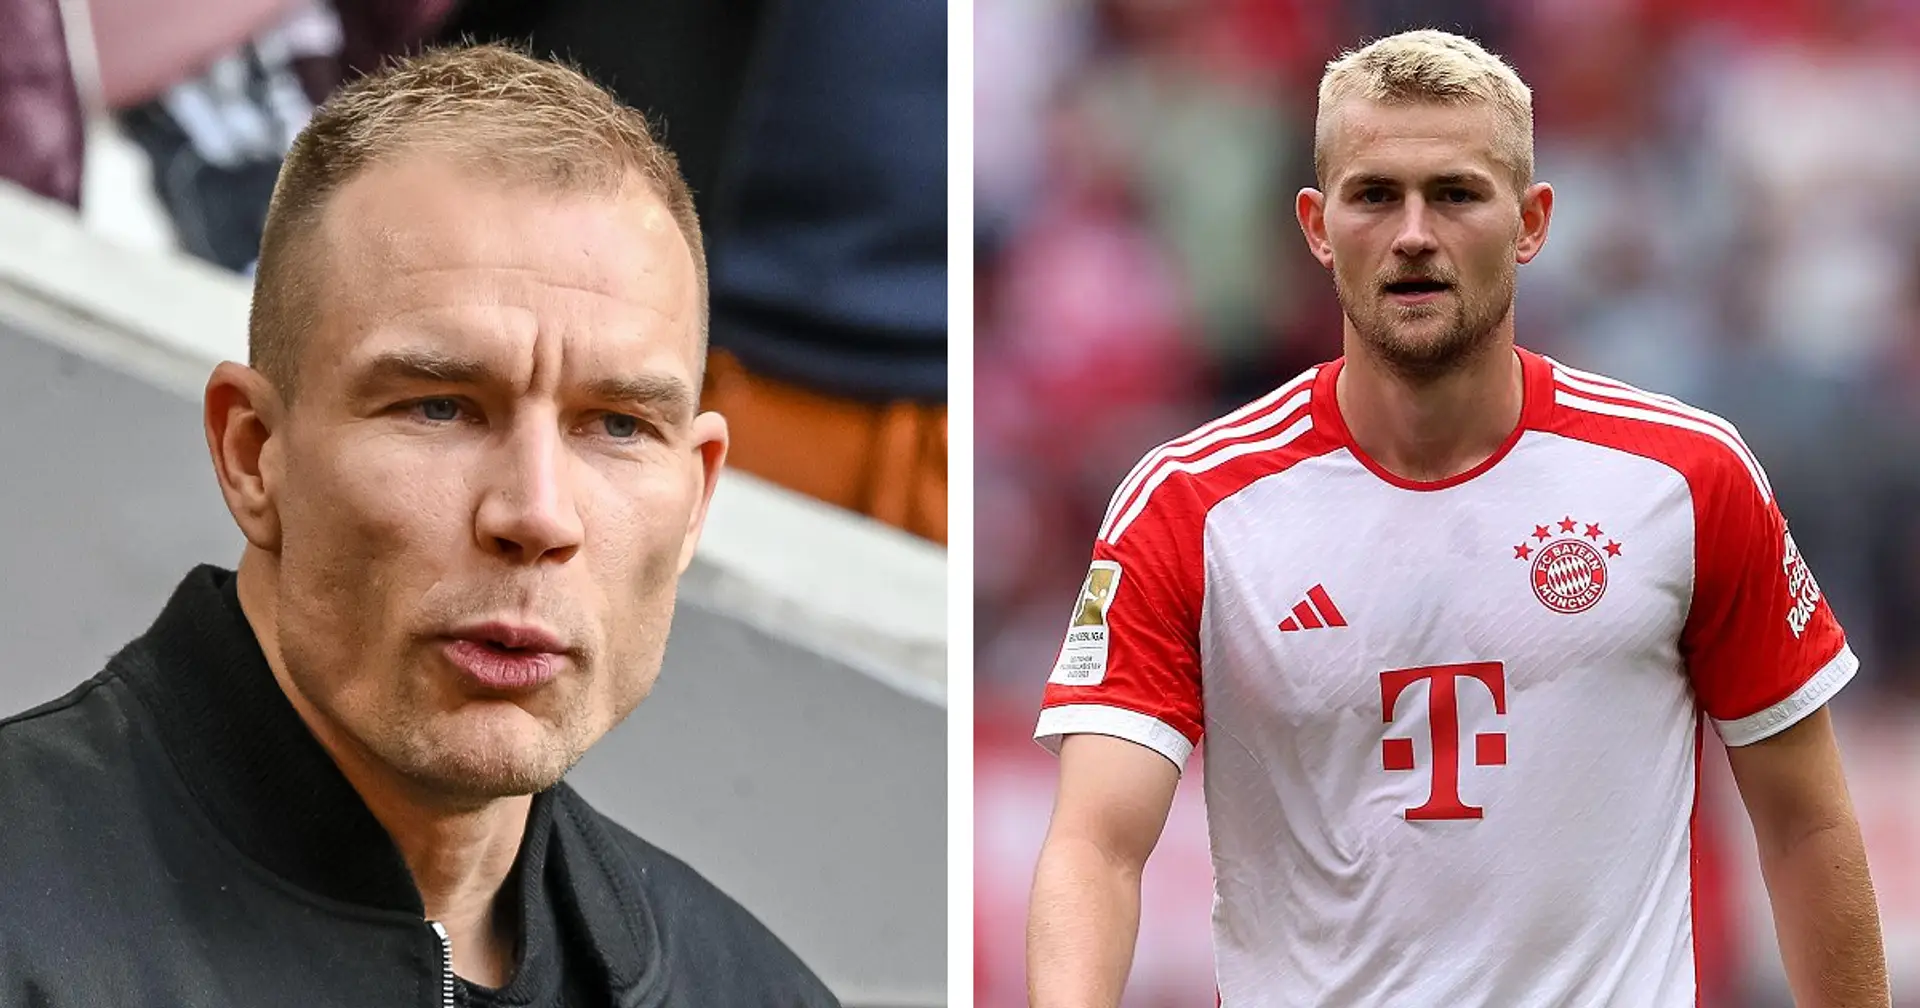 Badstuber über de Ligt: "Letzte Saison wurde ihm die Leader-Rolle bei den Bayern aufgedrückt"